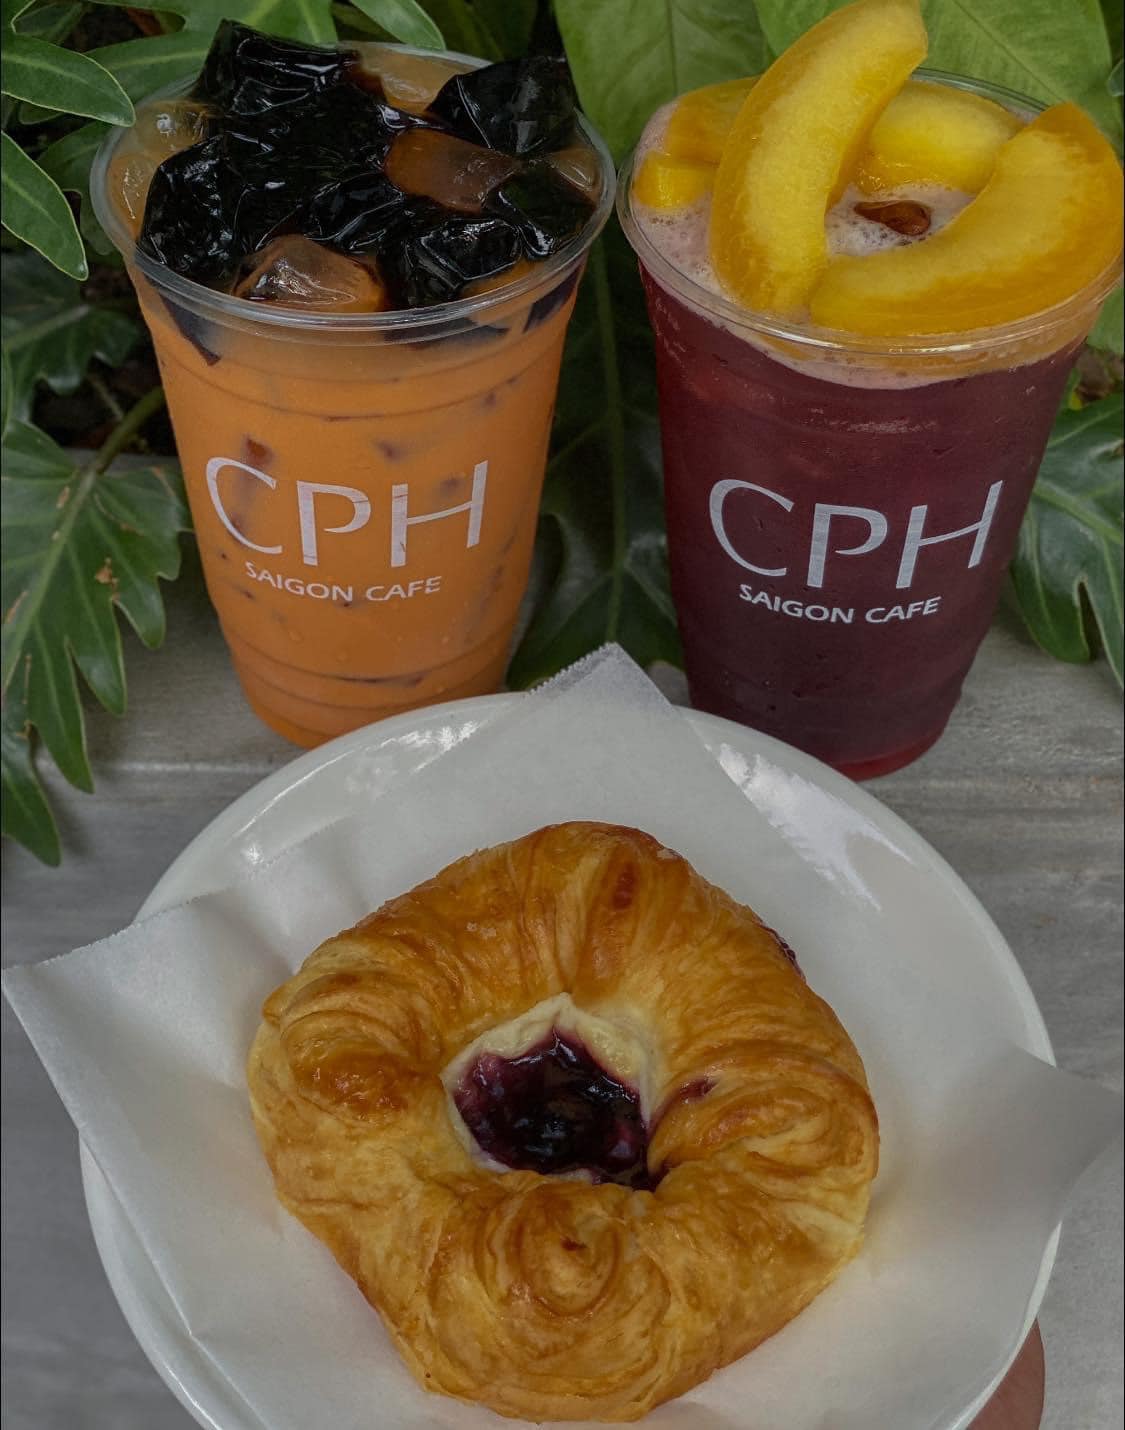 CPH Saigon Cafe